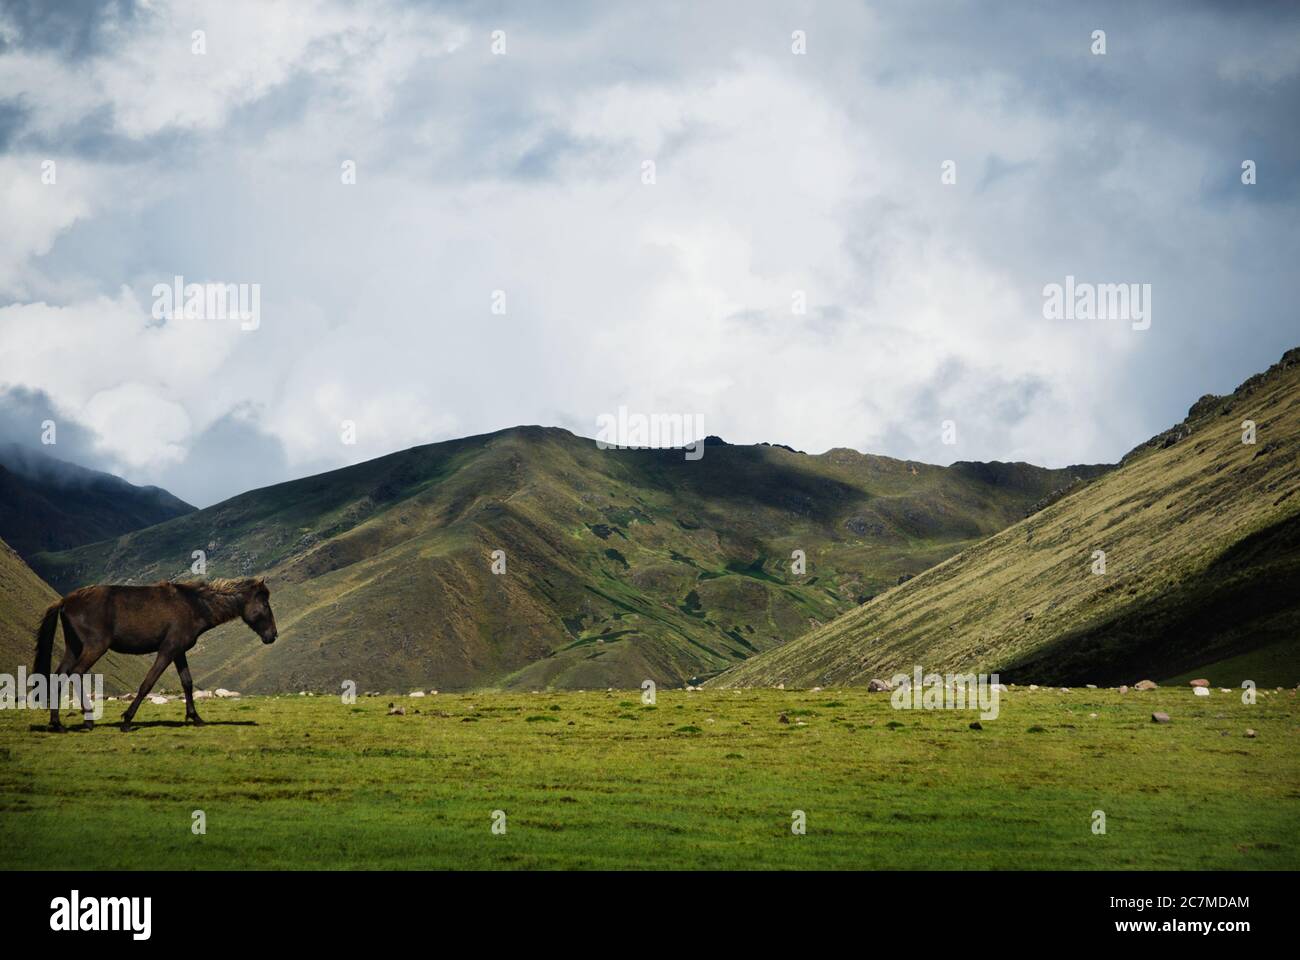 Pferd in den Bergen, Chaulacocha Vilage, Anden, Peru, Südamerika Stockfoto